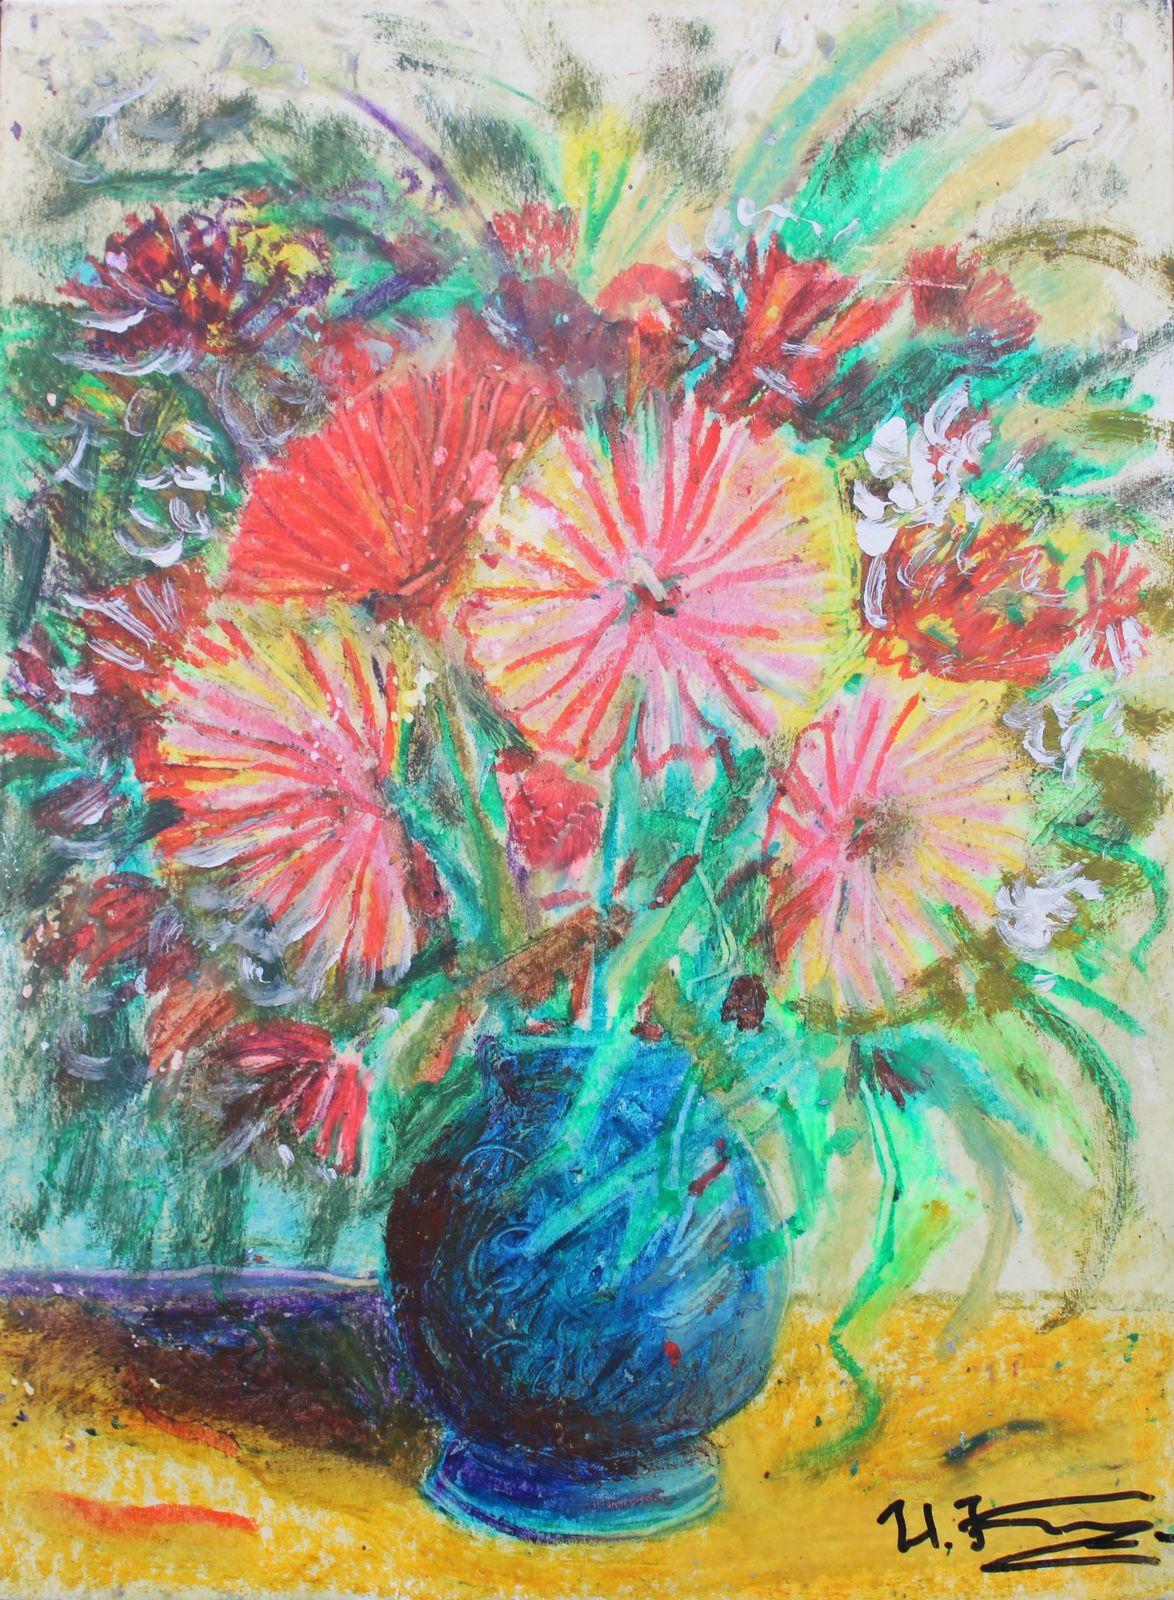 Fleurs dans un vase bleu. Cardboard, technique d'auteur, 29x21,5 cm